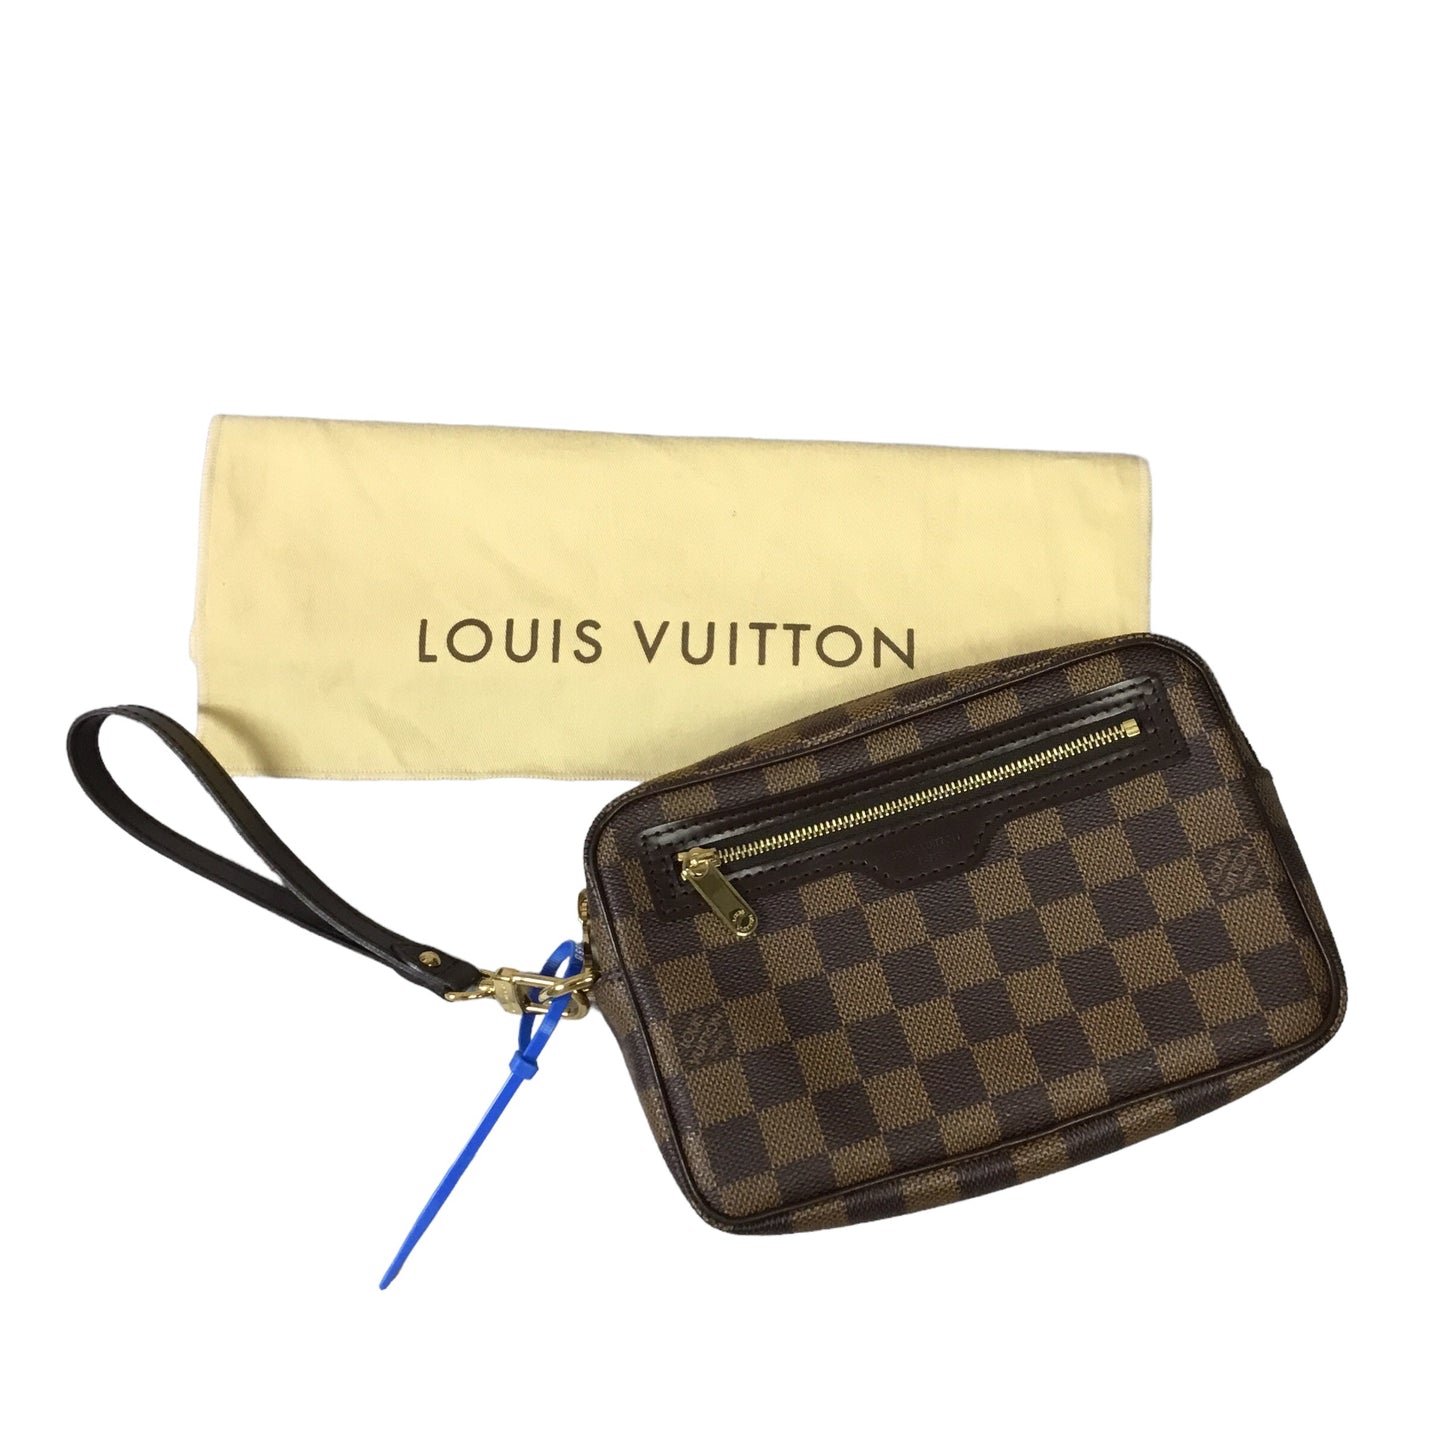 Brown Clutch Luxury Designer Louis Vuitton, Size Medium